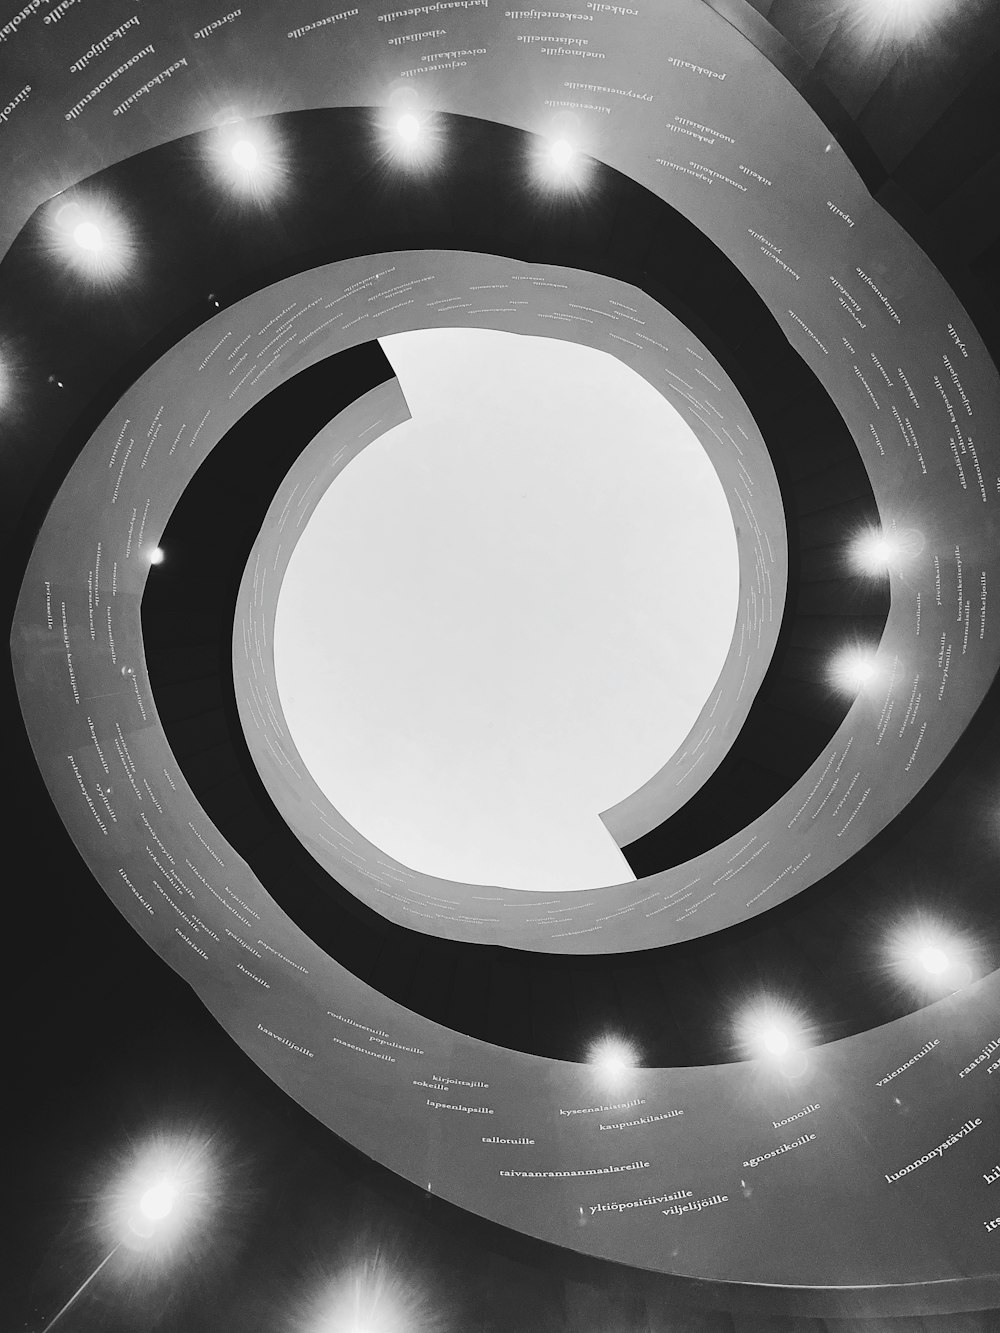 une photo en noir et blanc d’une structure circulaire